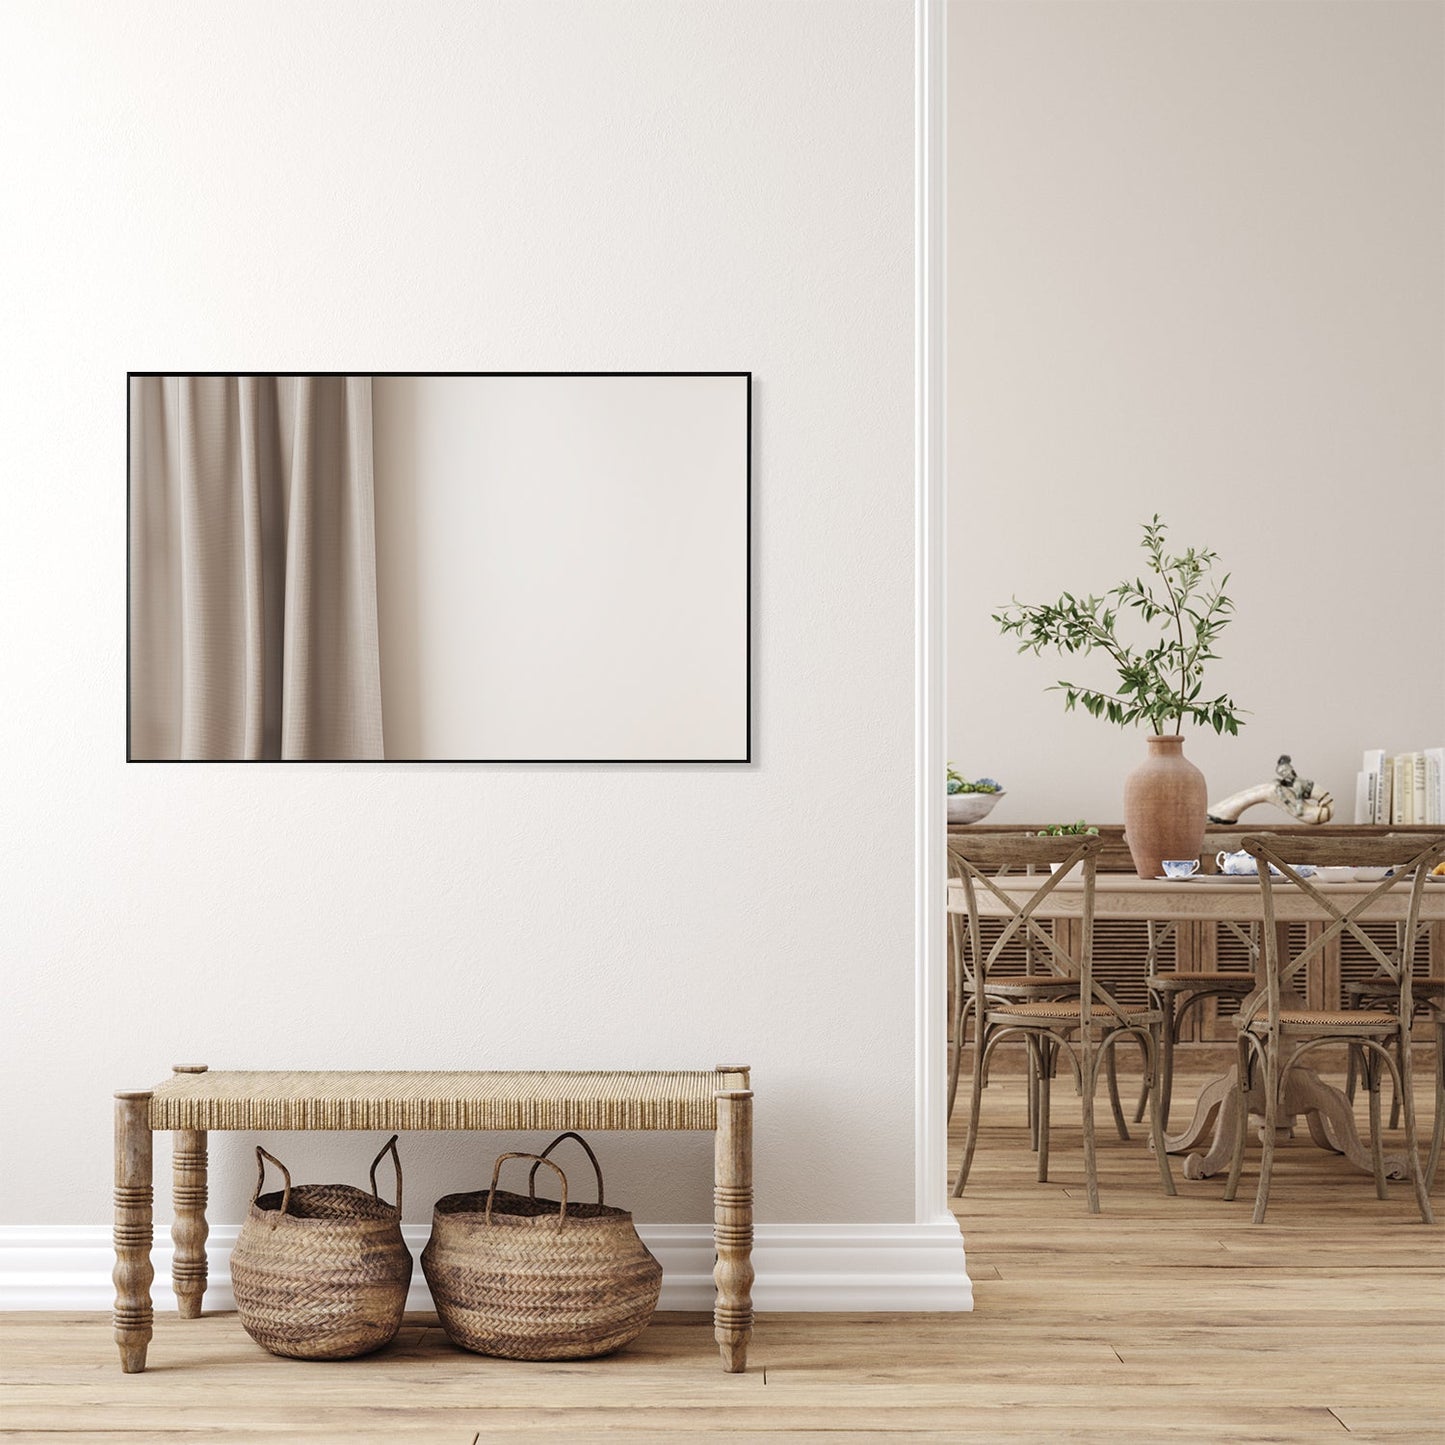 Sassi 48" Rectangle Bathroom/Vanity Matt Black Aluminum Framed Wall Mirror